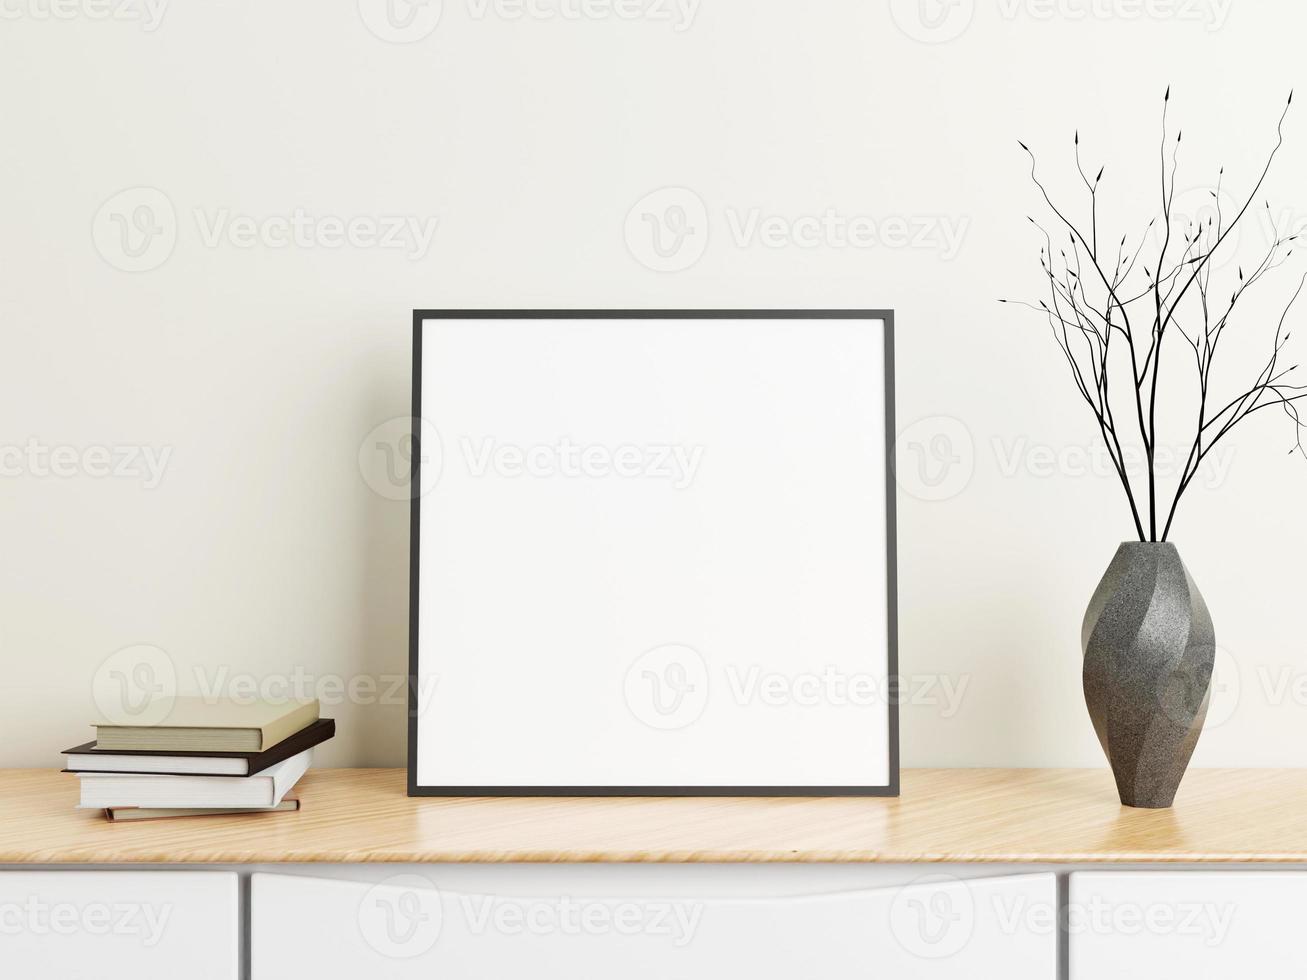 minimalistisk fyrkantig svart affisch eller fotoram mockup på träbord med böcker och vas i ett rum. 3d-rendering. foto